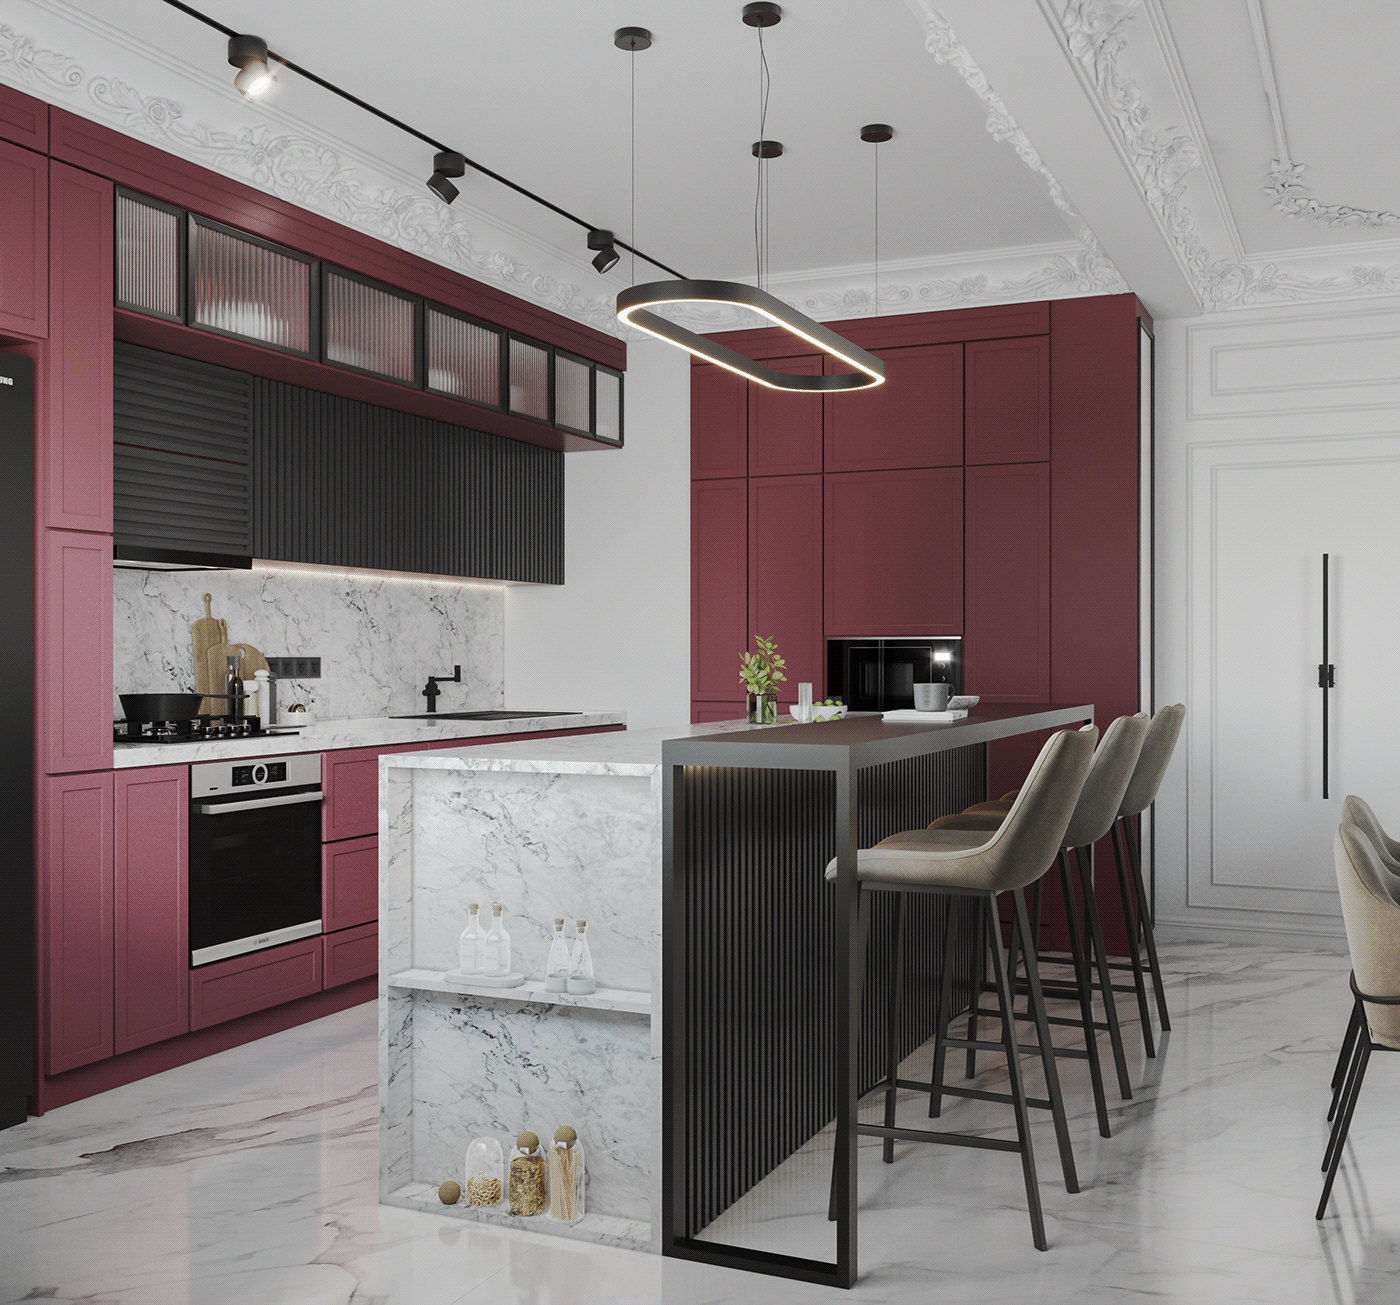 Bordeaux dining room interior design  kitchen KitchenStudio living room modern Render visualization